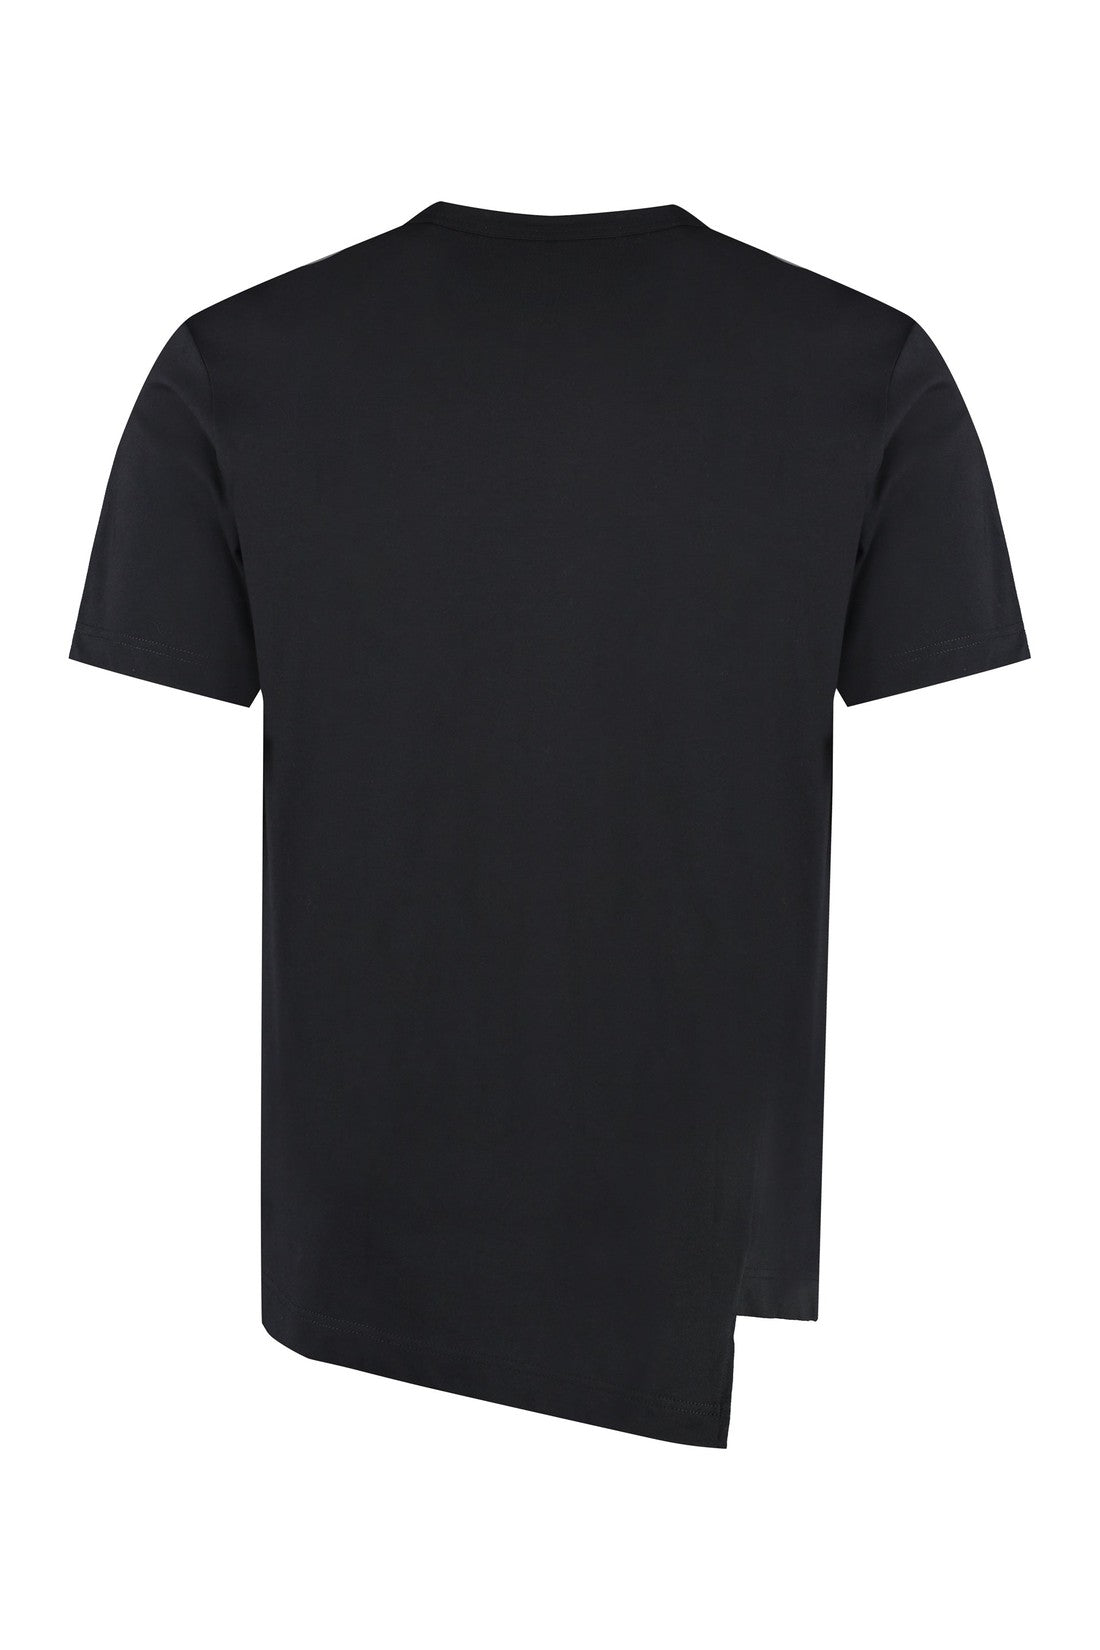 Comme des Garçons SHIRT-OUTLET-SALE-Lacoste x Comme des Garçons - Cotton crew-neck T-shirt-ARCHIVIST